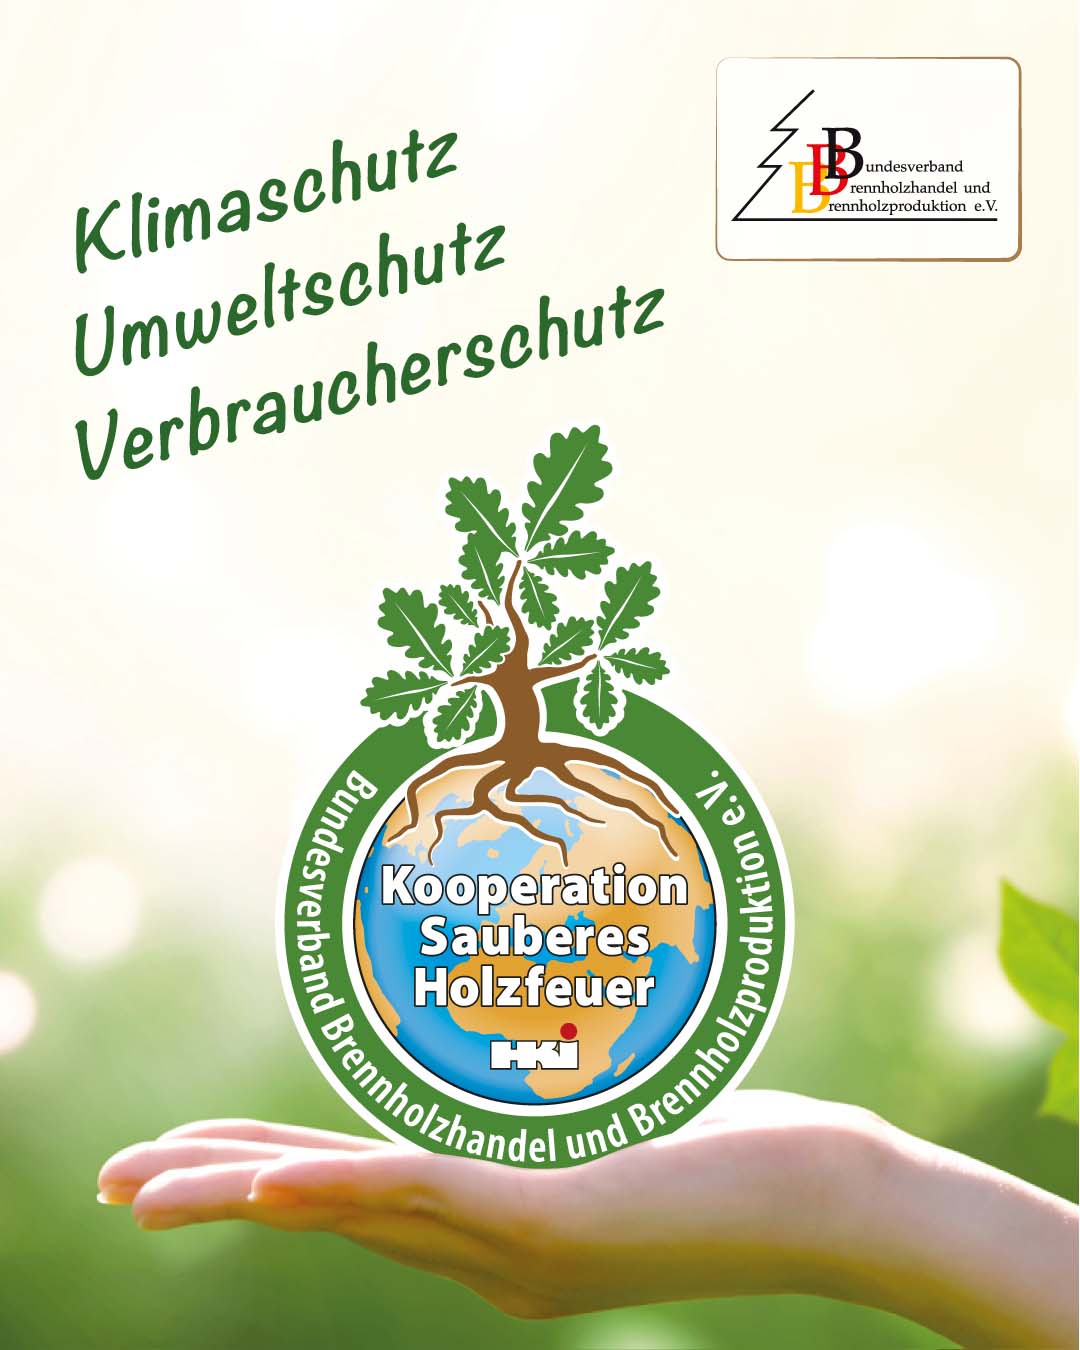 Siegel der Kooperation für sauberes Holzfeuer, das die nachhaltigen und umweltfreundlichen Maßnahmen von Kaminholz Breuer im Brennholzhandel repräsentiert.